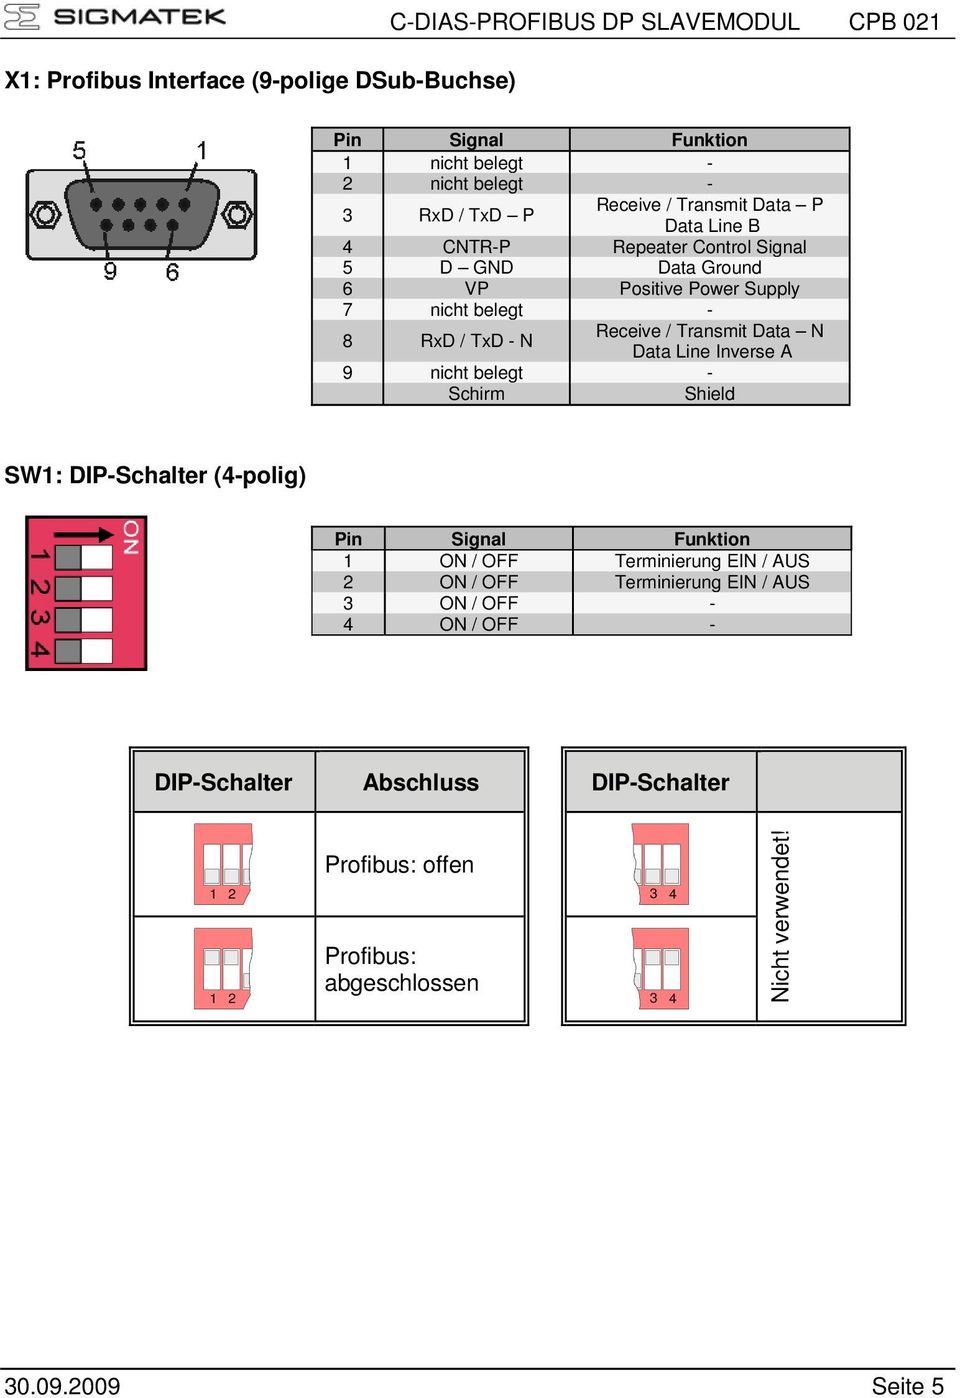 Data N Data Line Inverse A 9 nicht belegt - Schirm Shield SW1: DIP-Schalter (4-polig) Pin Signal Funktion 1 ON / OFF Terminierung EIN / AUS 2 ON / OFF